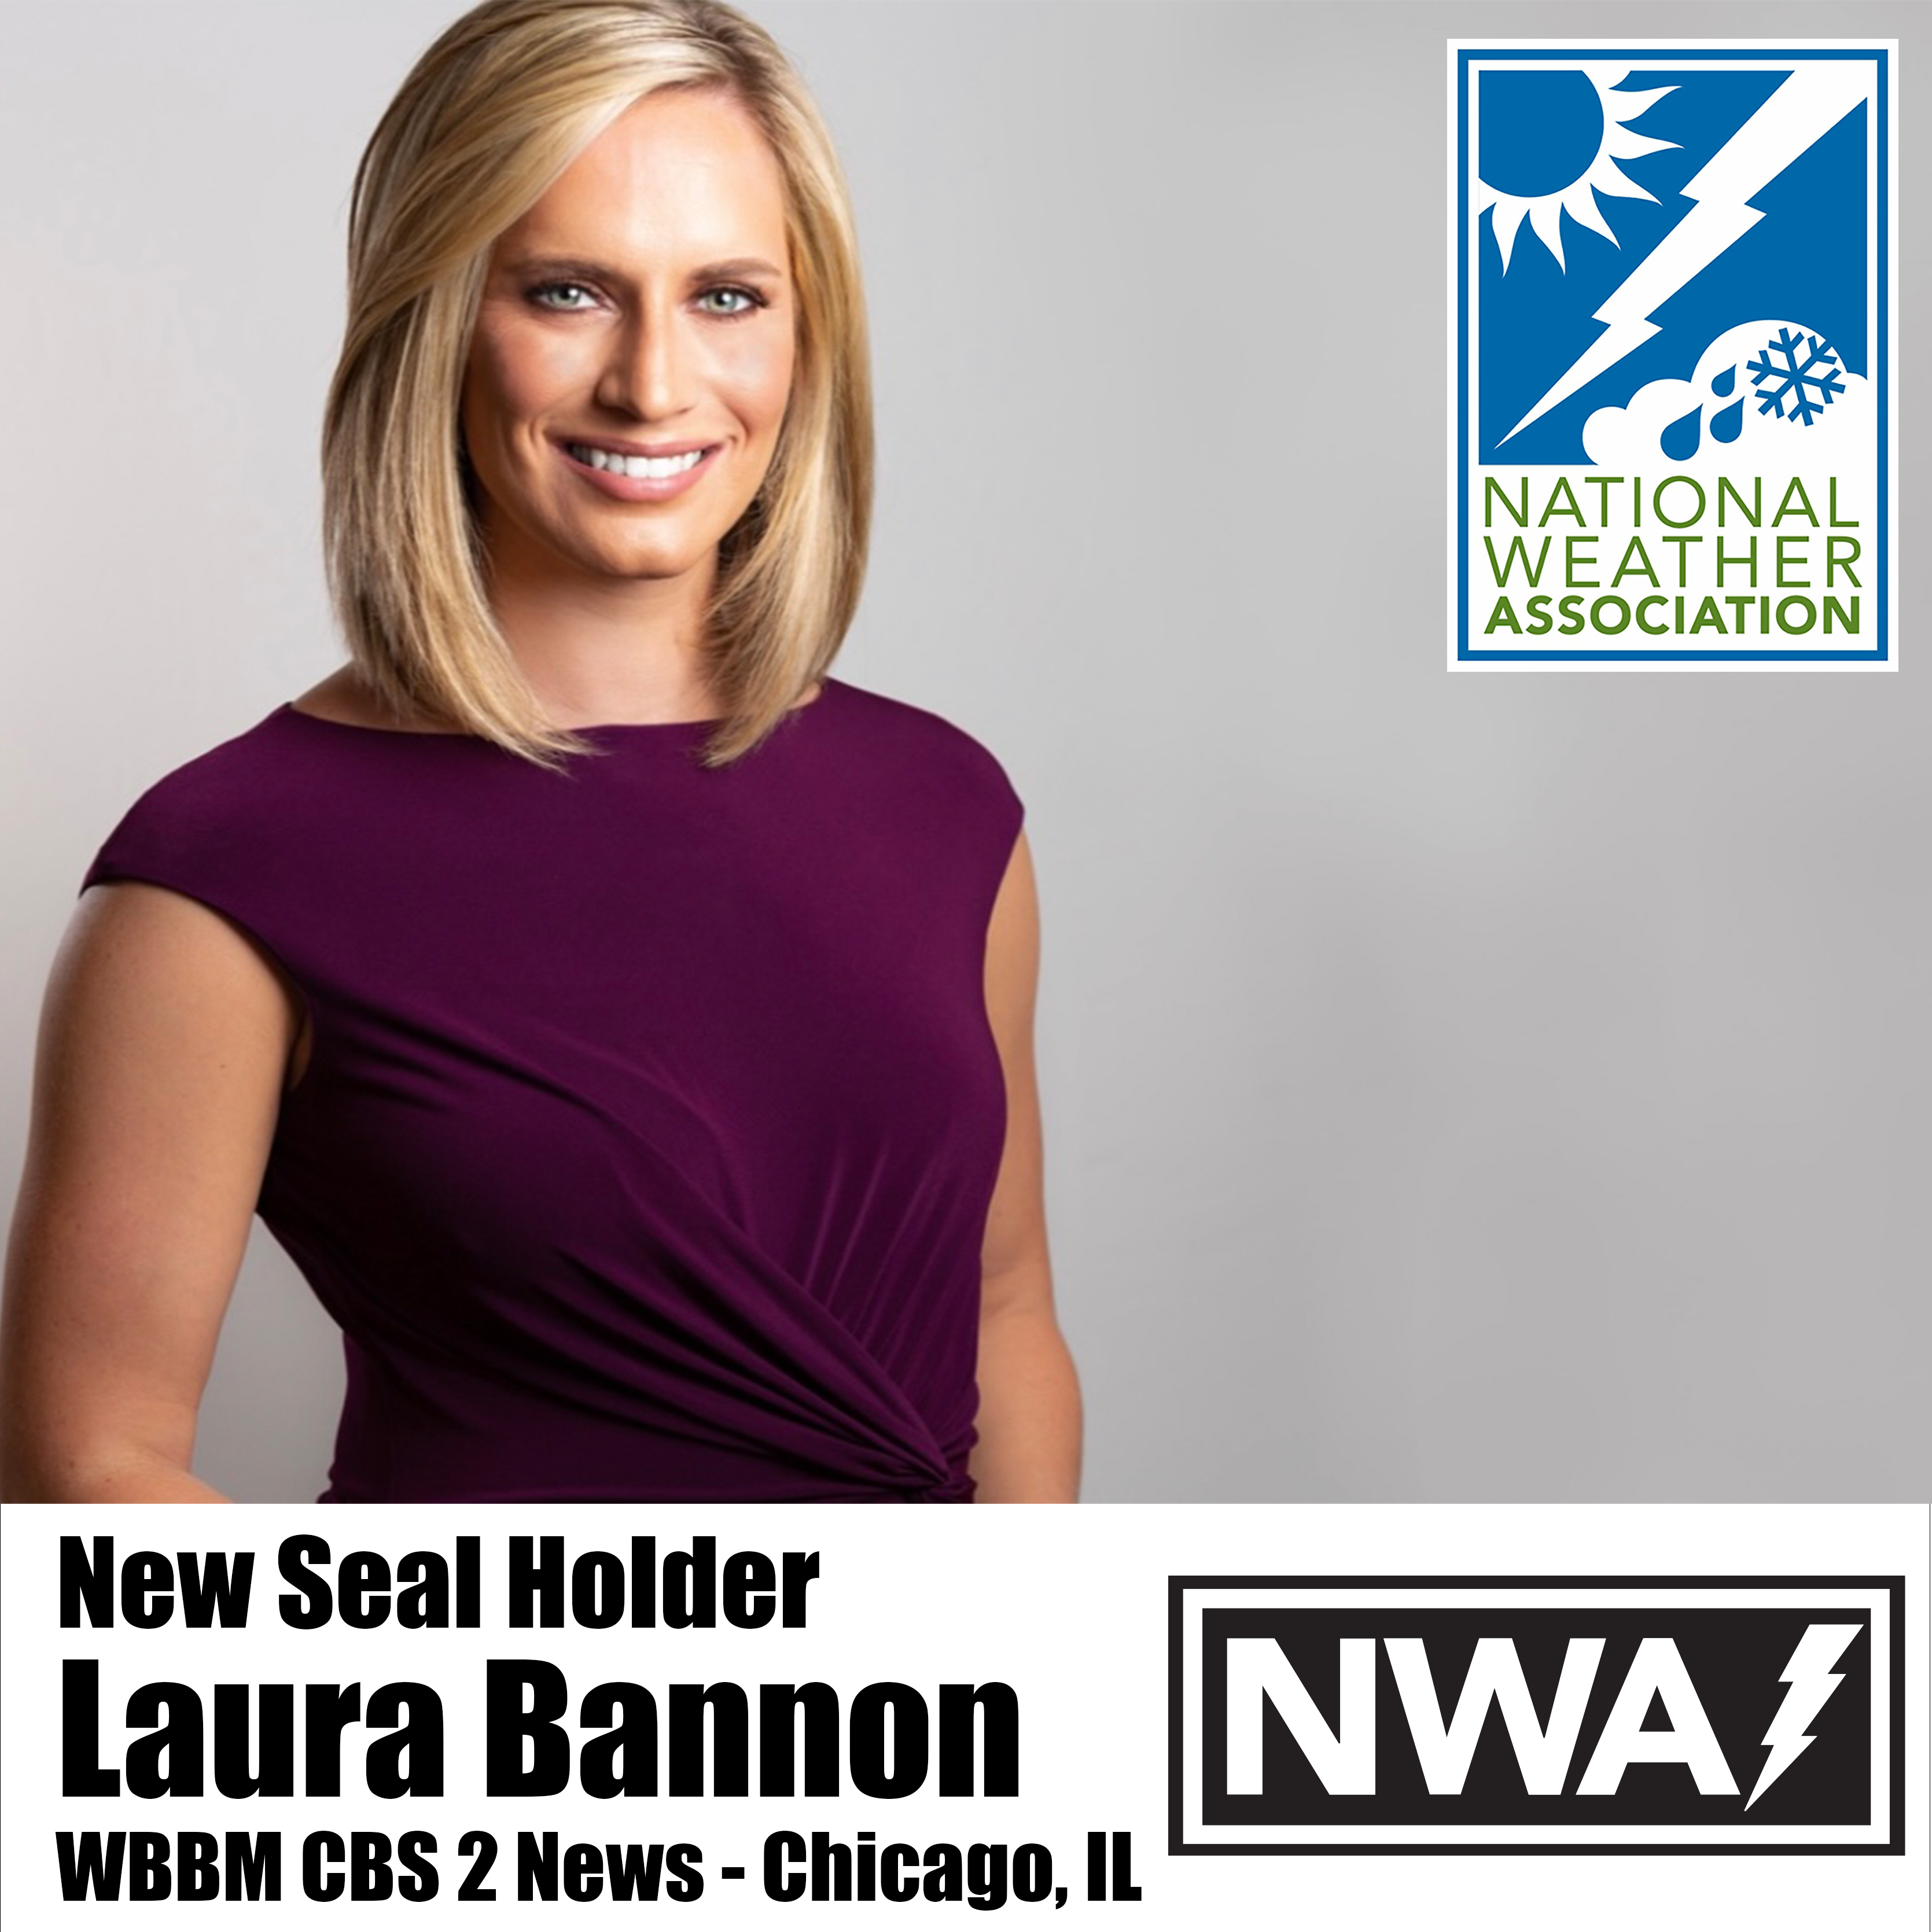 Laura Bannon of WBBM CBS 2 News in Chicago, IL